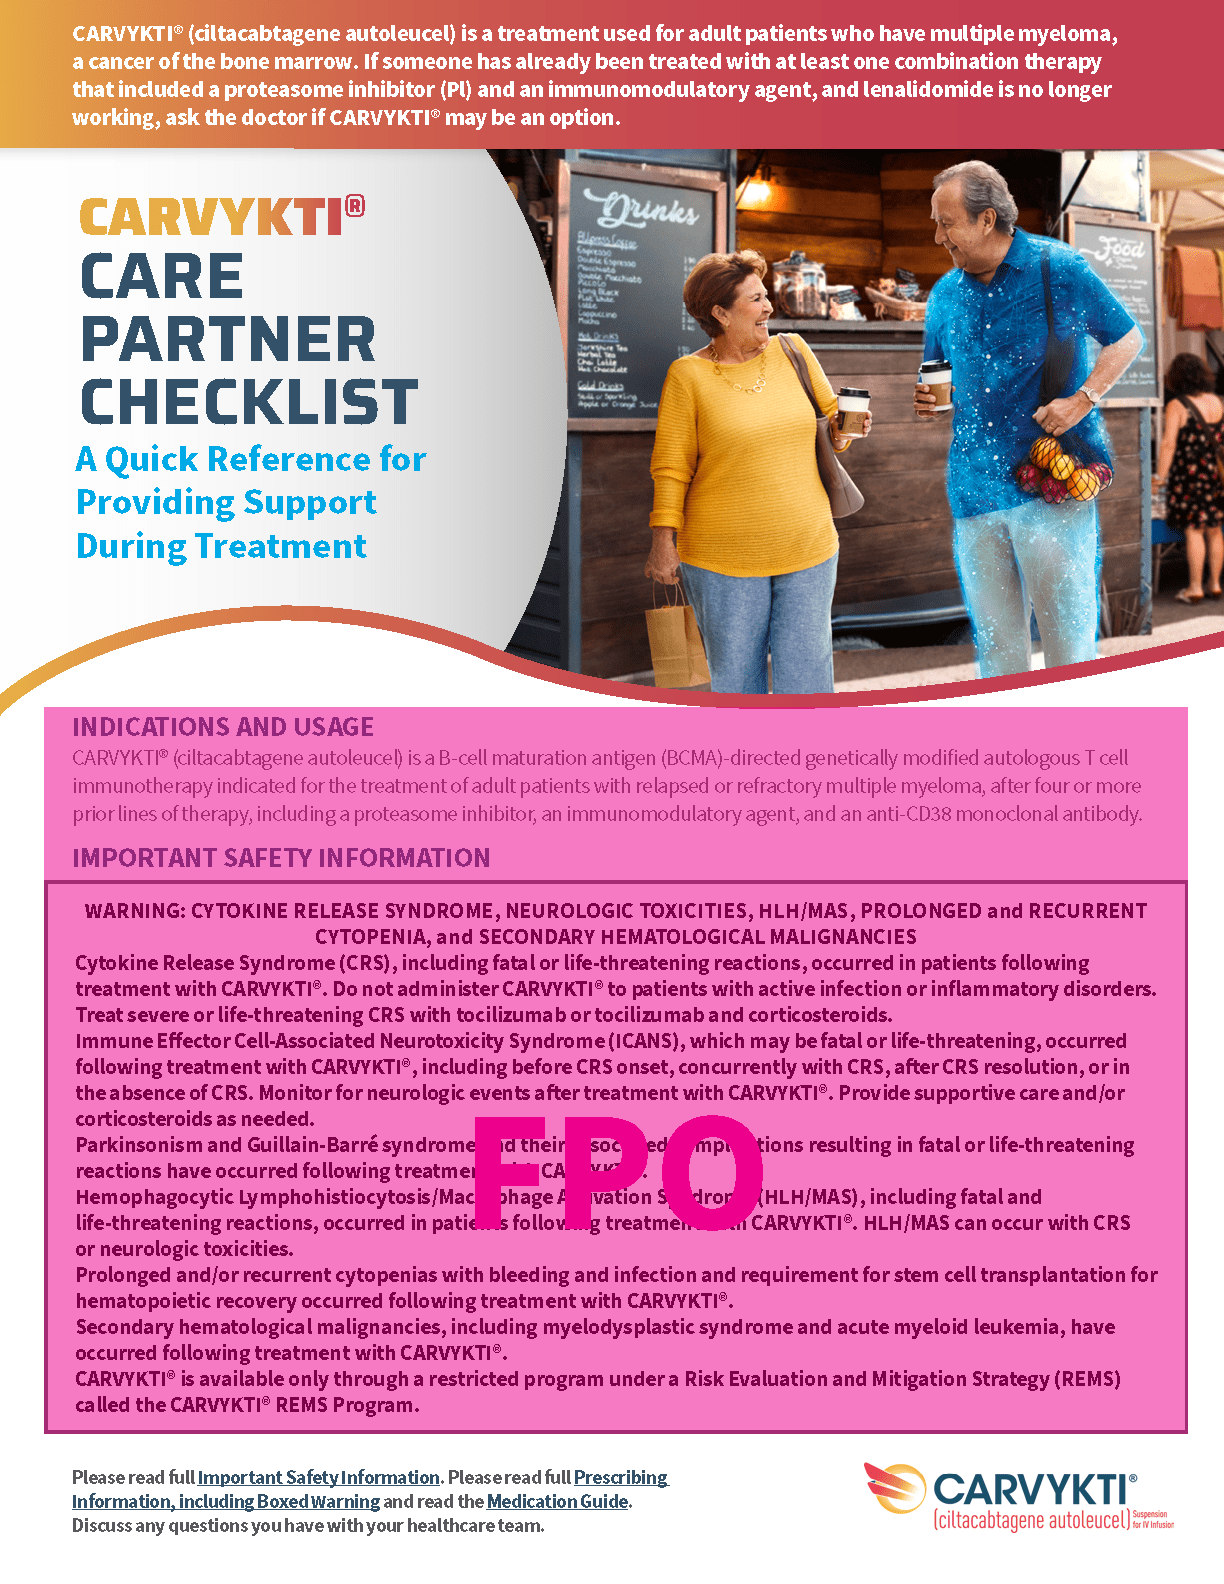 CARVYKTI® care partner checklist 